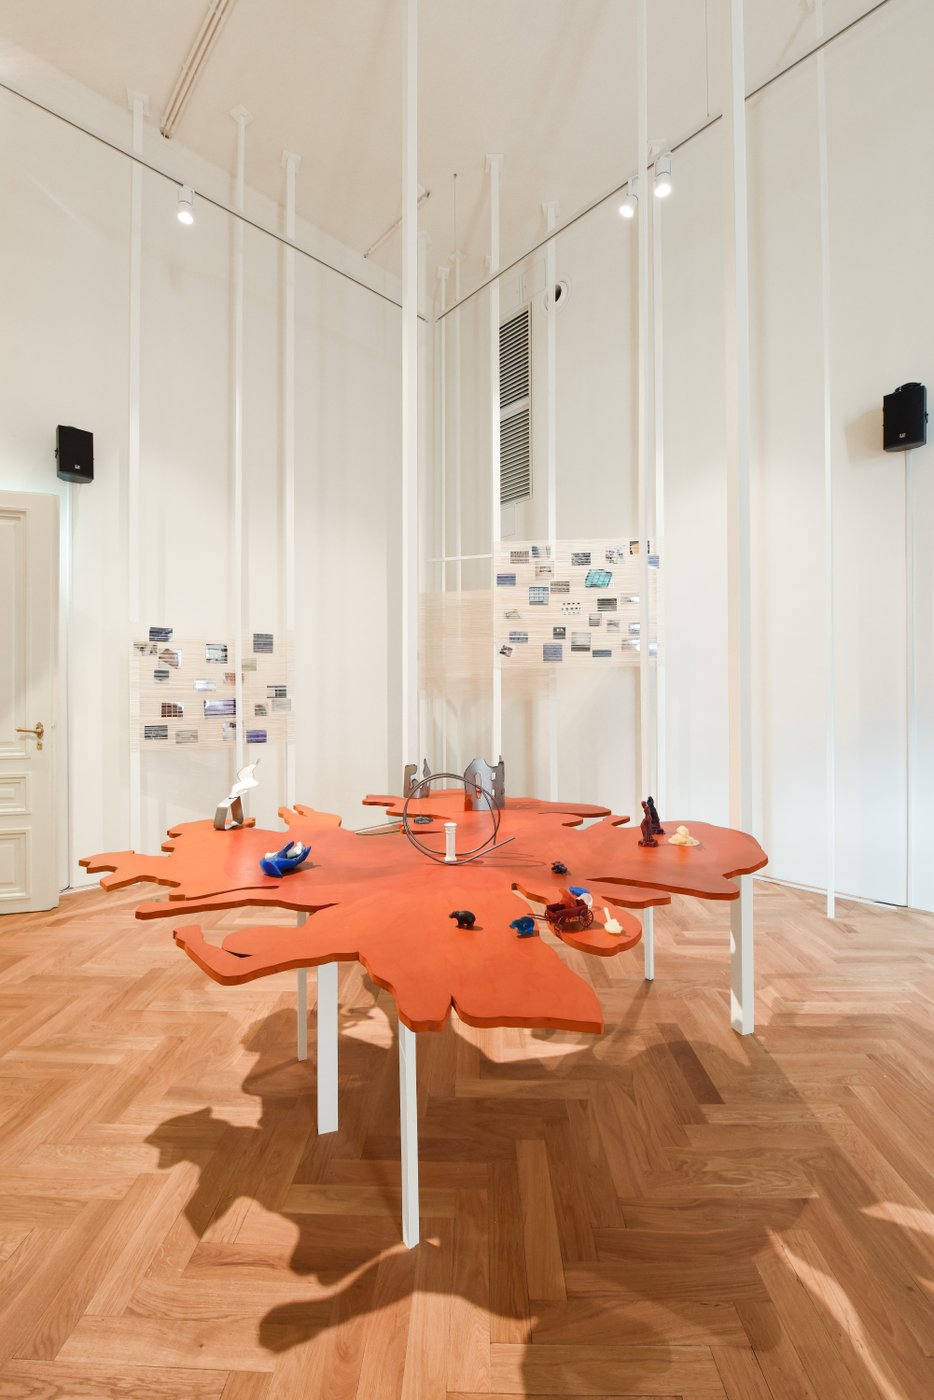 Ausstellungsansicht mit einer orangefarbenen Installation in Tischform